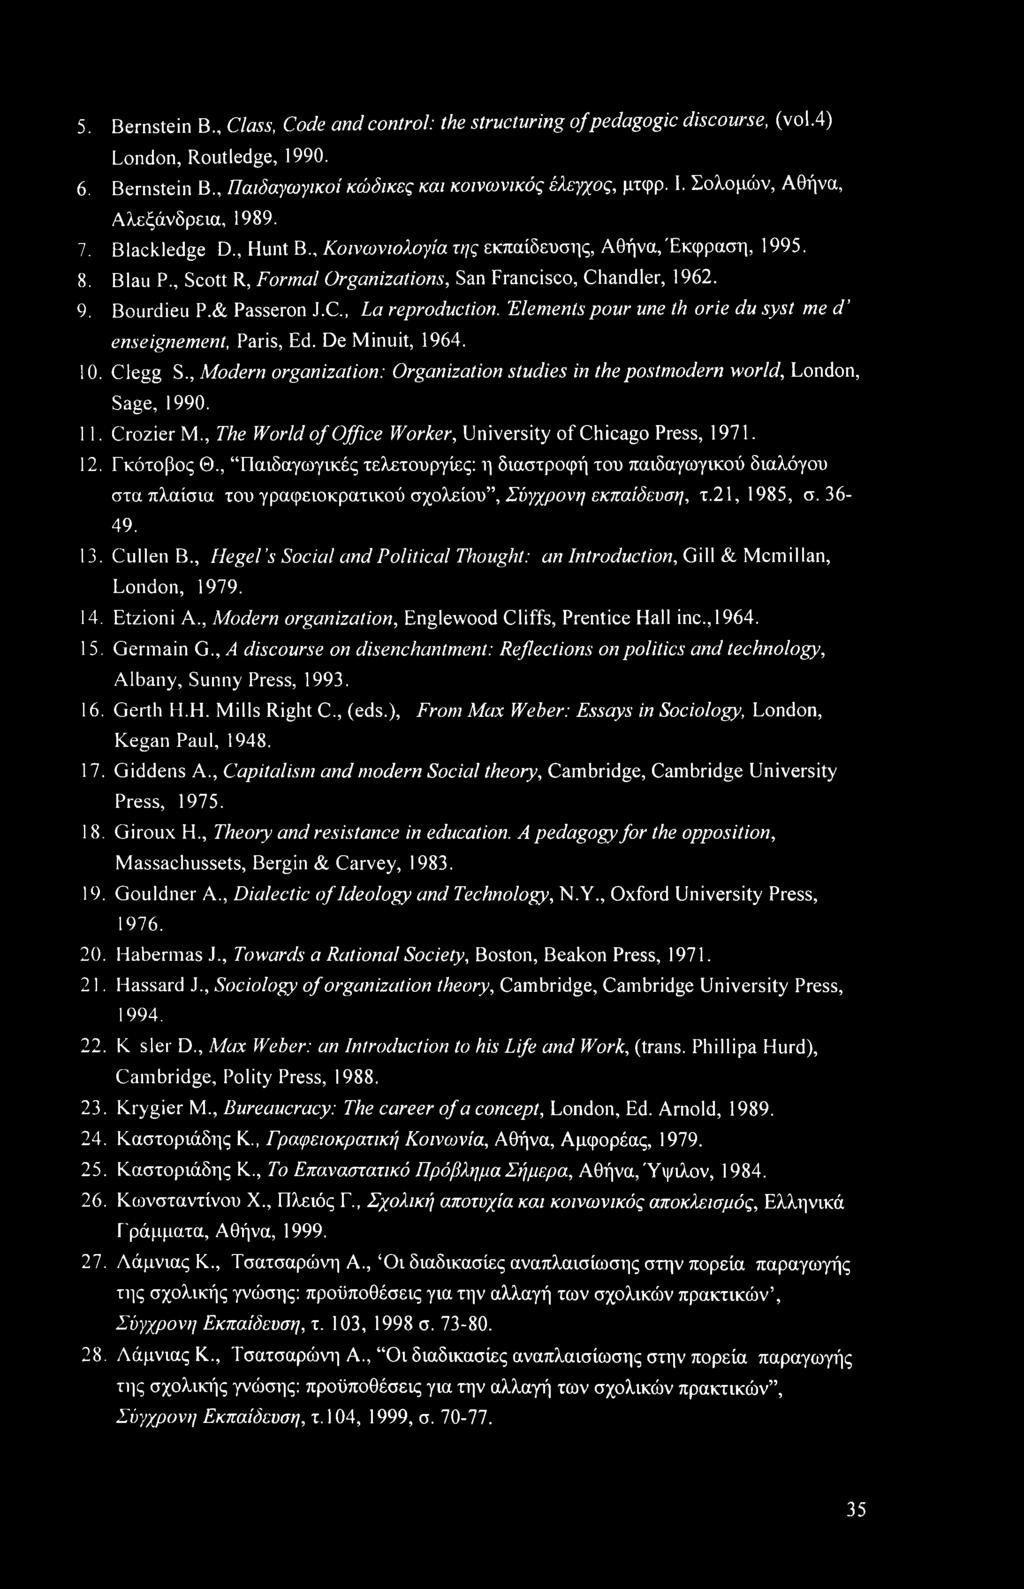 'Elements pour me th orie du syst me d enseignement, Paris, Ed. De Minuit, 1964. 10. Clegg S., Modern organization: Organization studies in the postmodern world, London, Sage, 1990. 11. Crozier M.